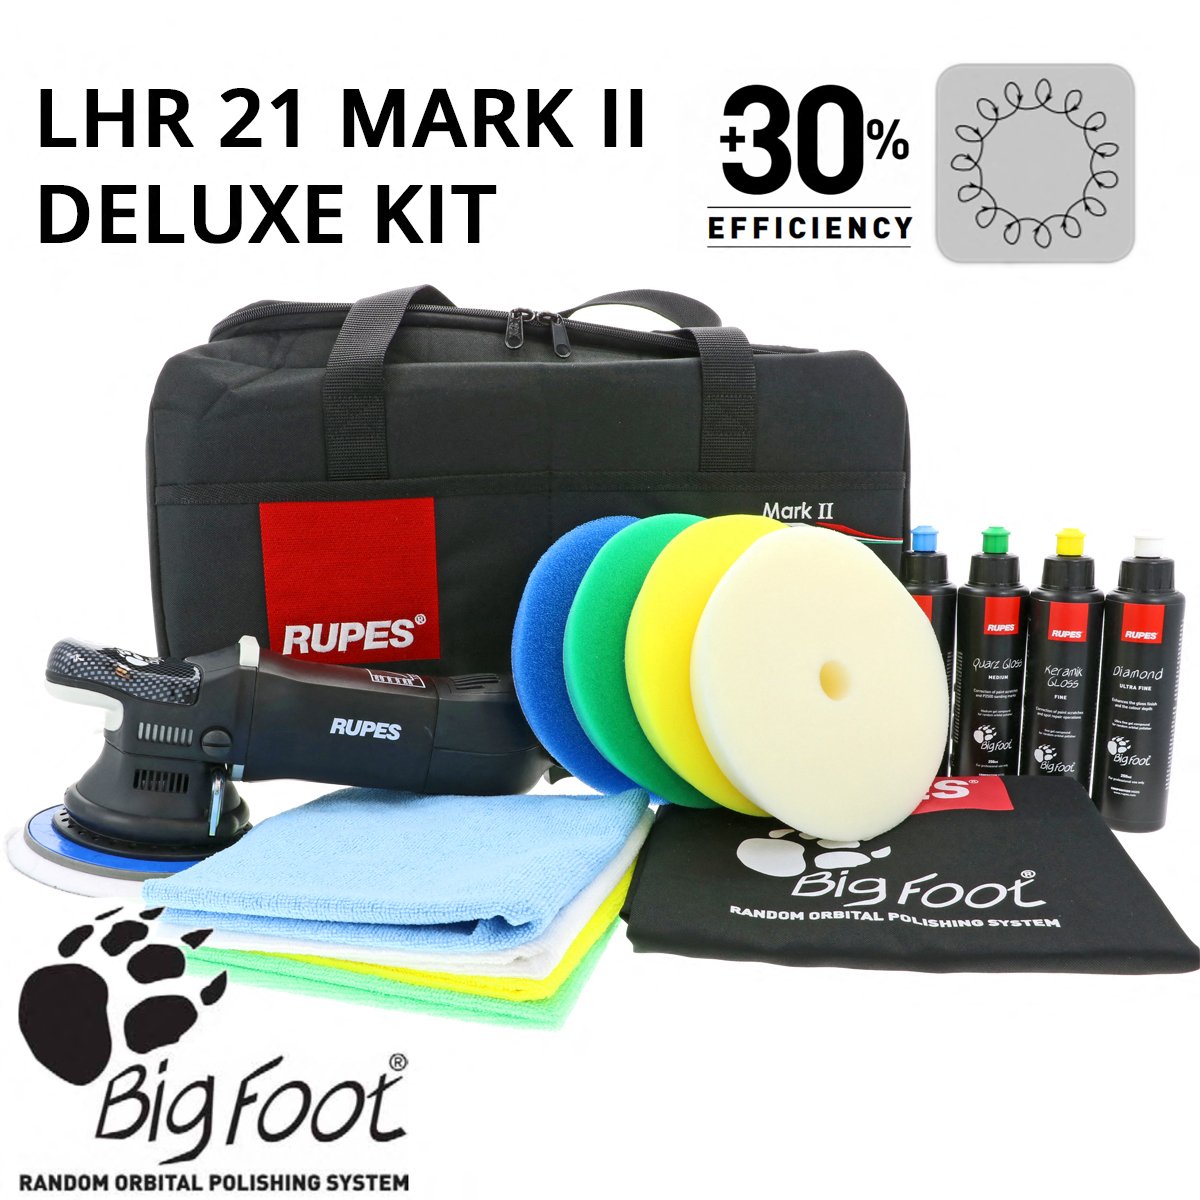 BigFoot LHR21 MarkII Deluxe Kit